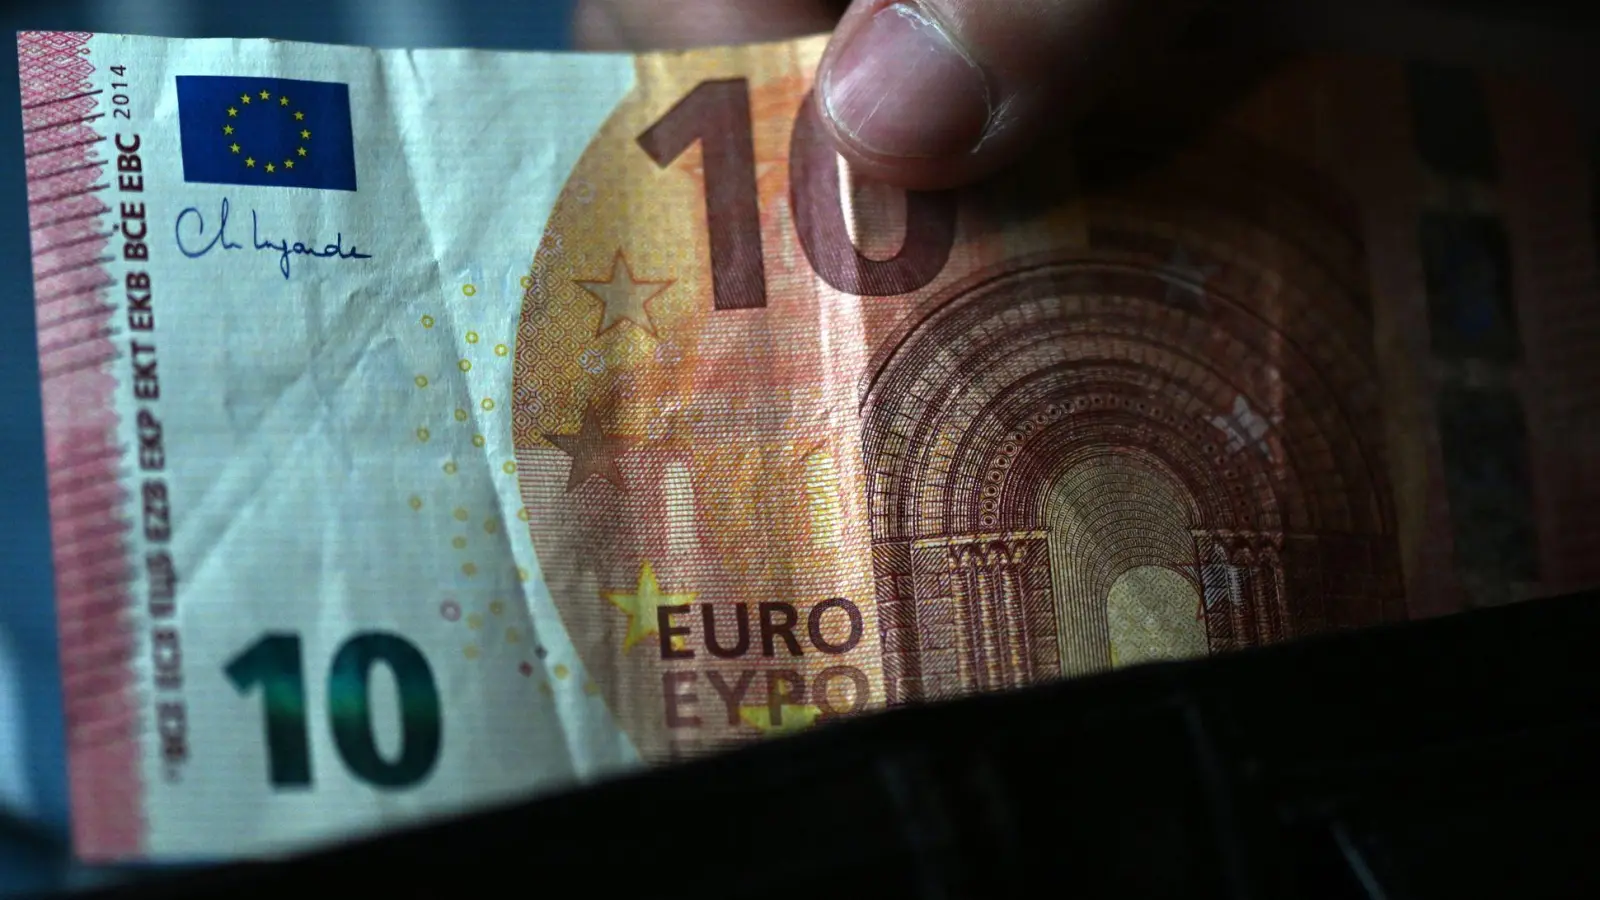 Laut einer Umfrage greifen die meisten Deutschen bei Rechnungen bis zu 20 Euro zum Bargeld. (Foto: Federico Gambarini/dpa)